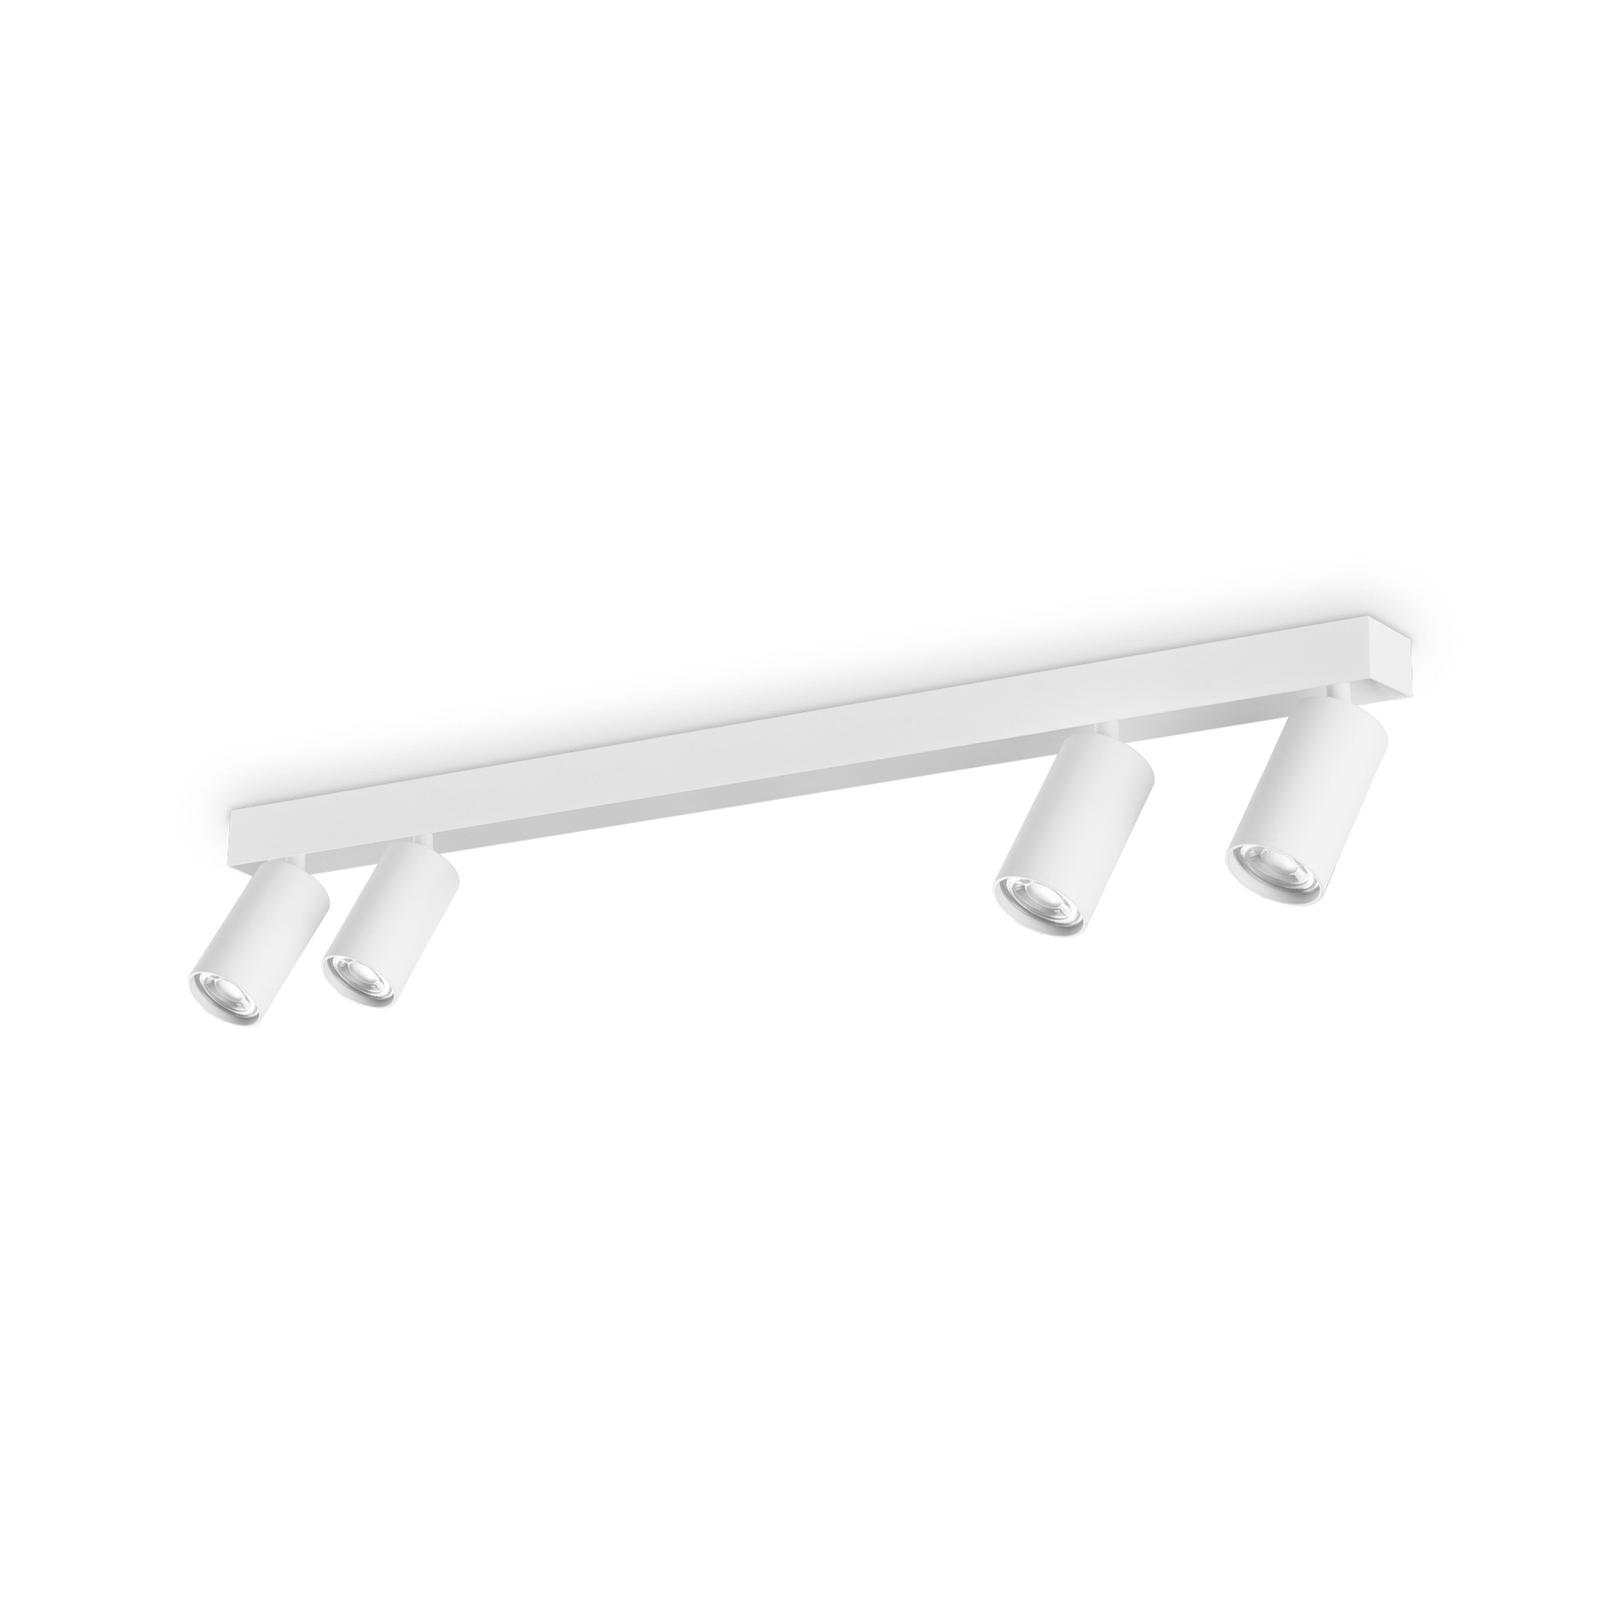 Projetor de teto Ideal Lux Profilo, branco, quatro luzes, metal